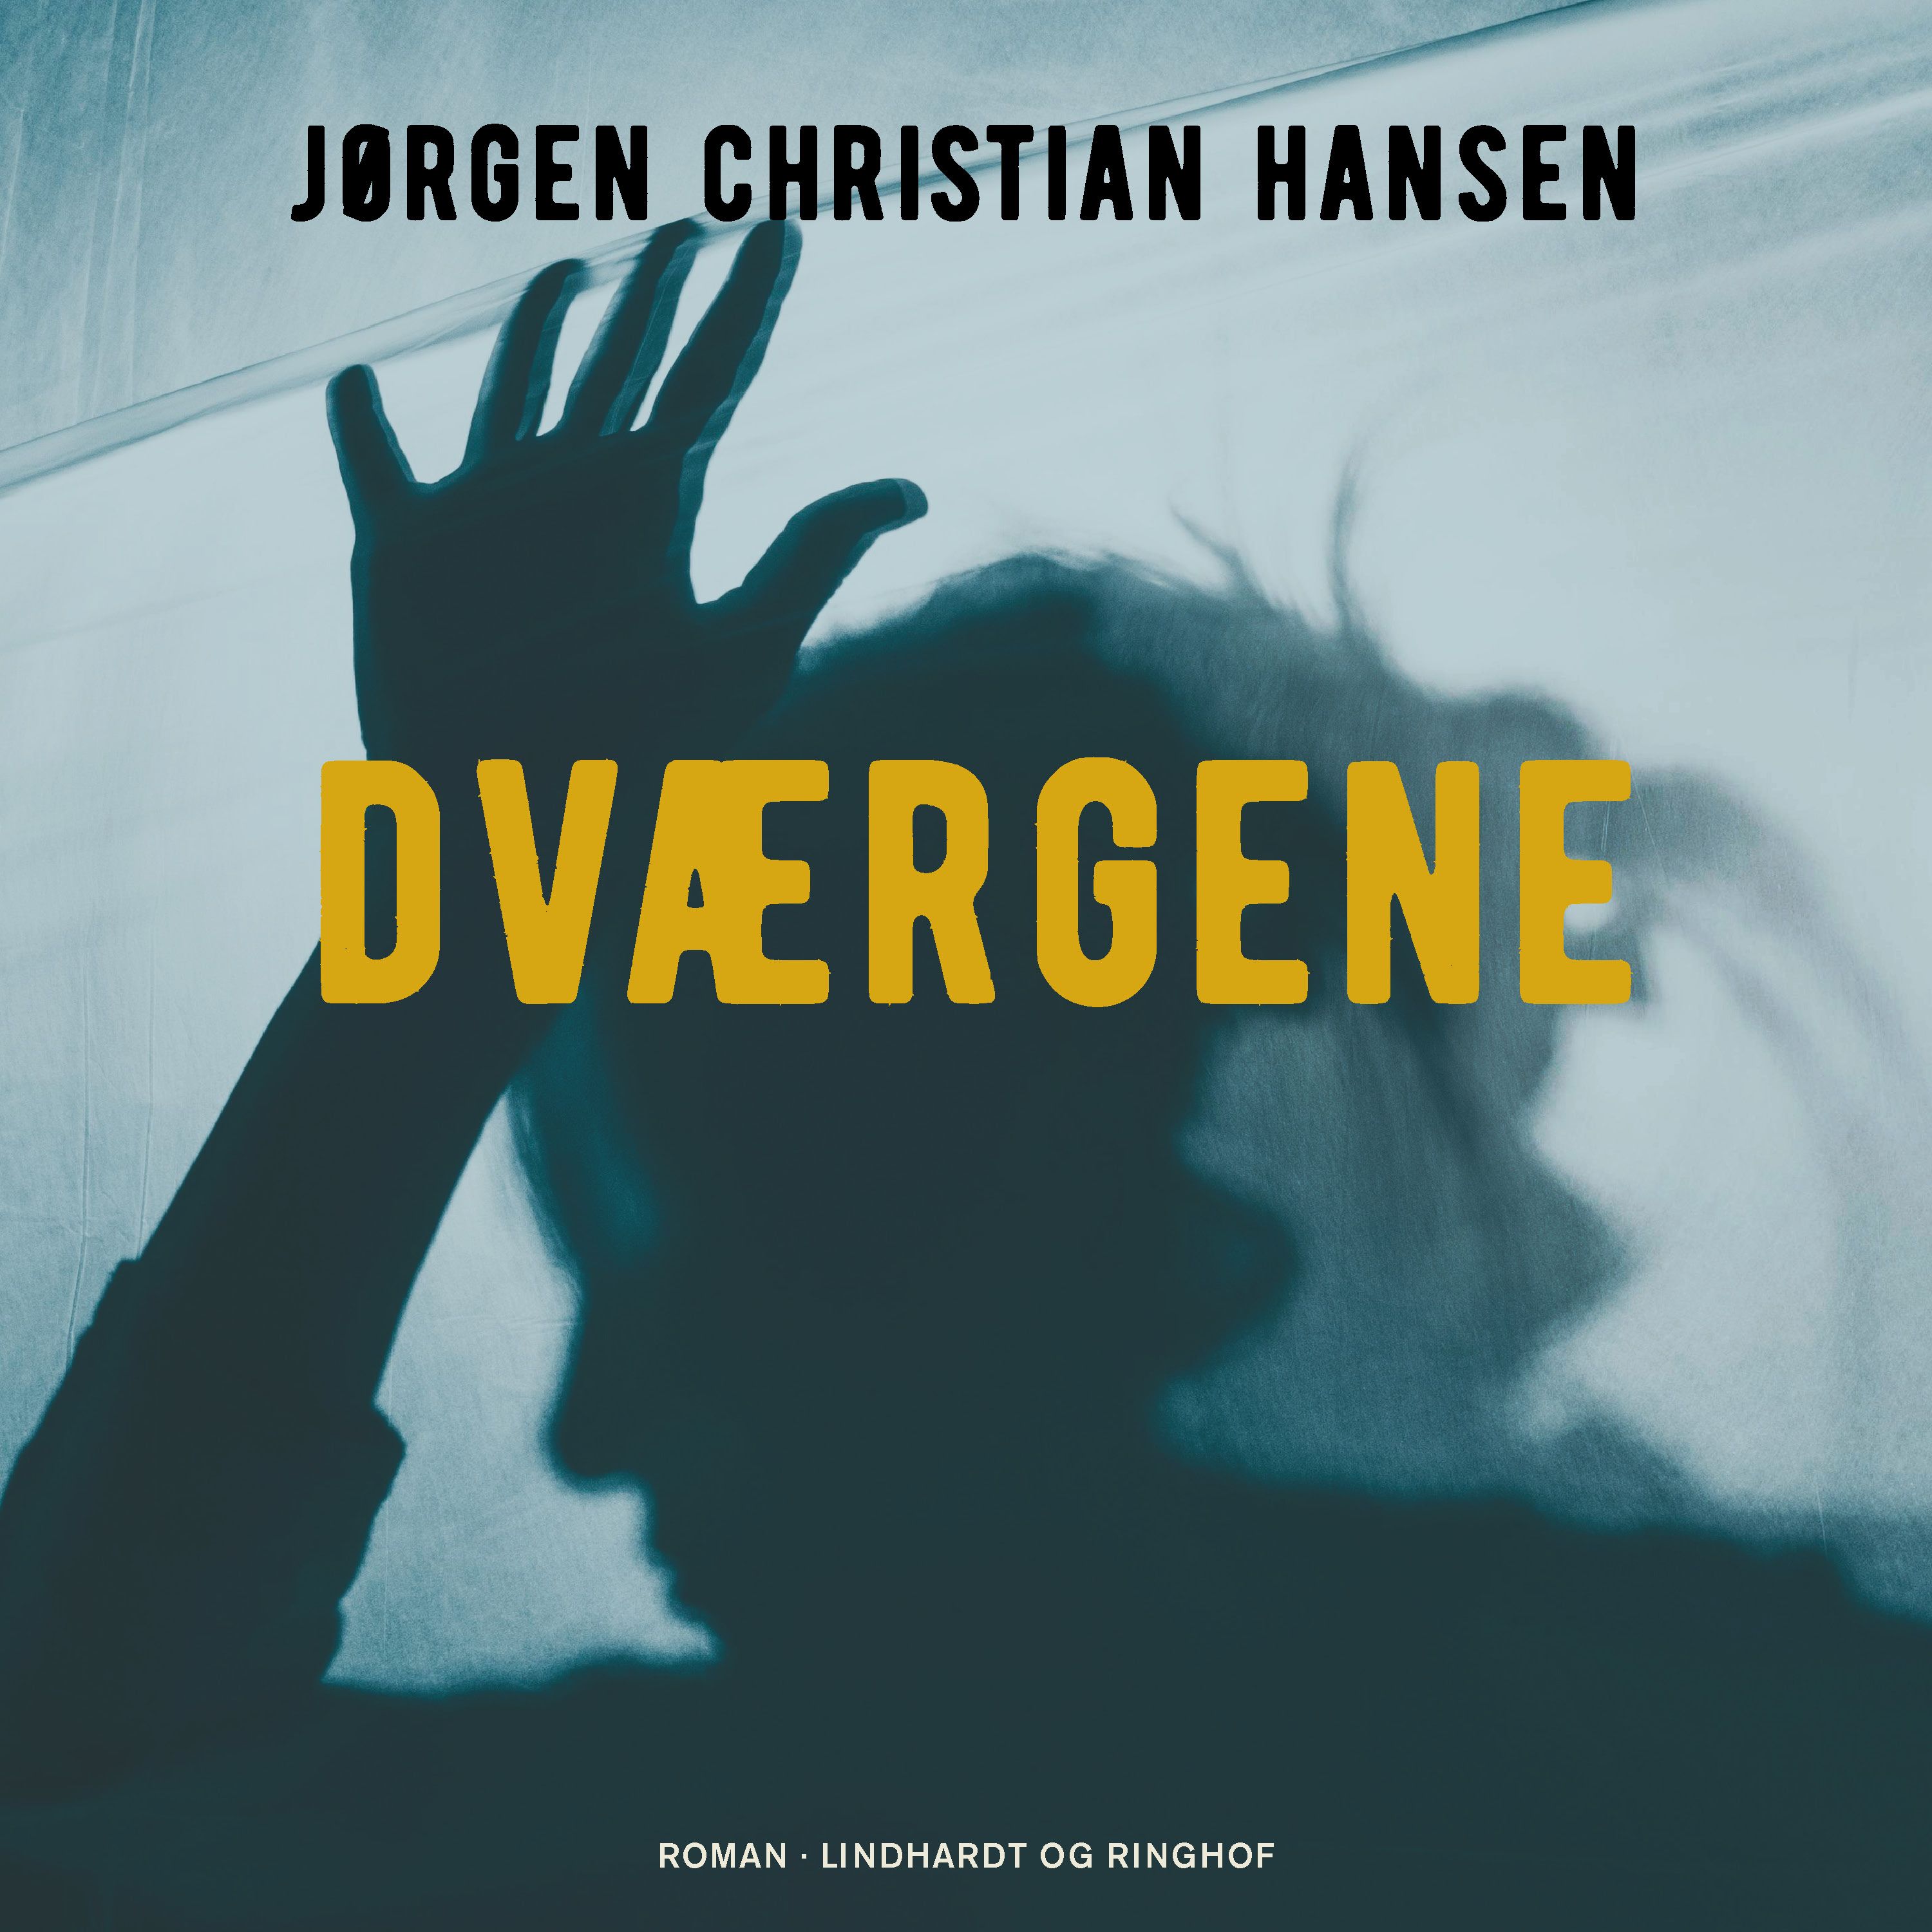 Dværgene, audiobook by Jørgen Christian Hansen